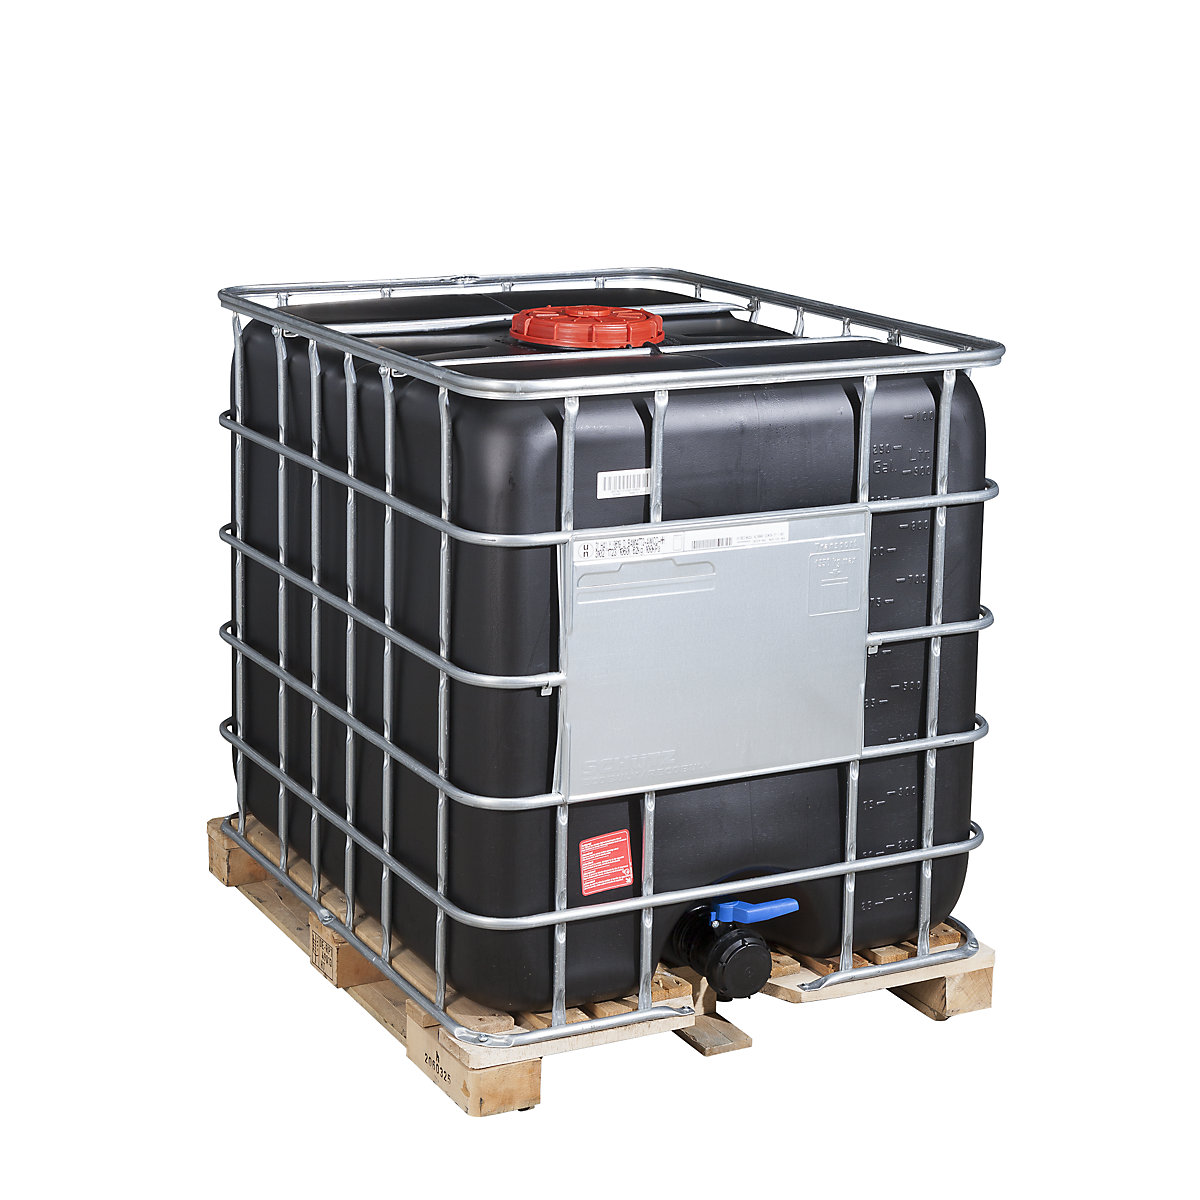 IBC-container RECOBULK met UV-bescherming, UN-goedkeuring